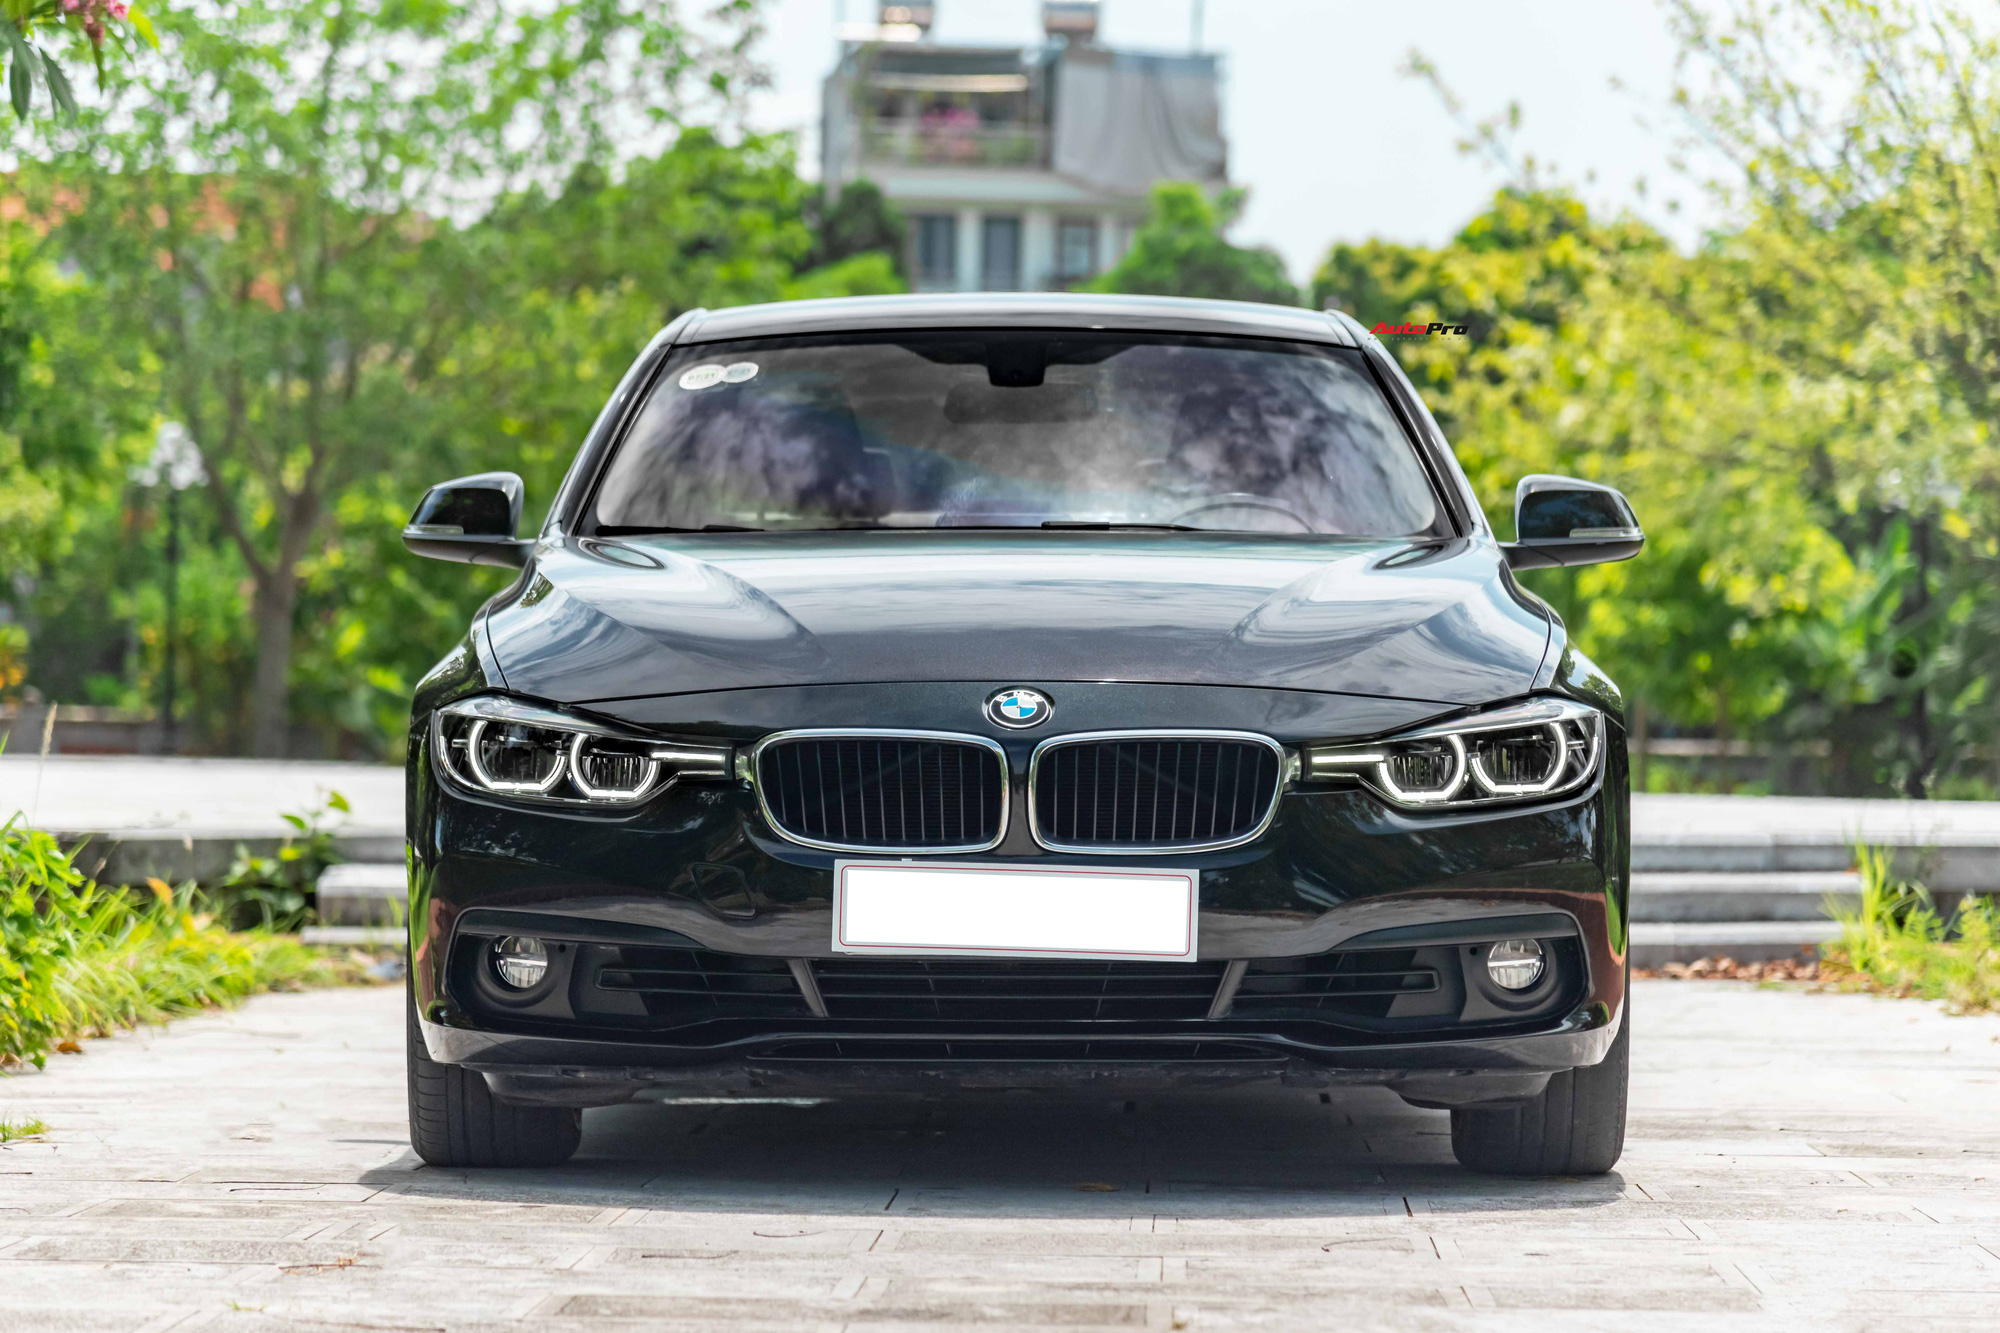 Chủ xe bán rẻ BMW 320i có nội thất 'kim cương', giá hơn 900 triệu đồng để vội lên đời E-Class